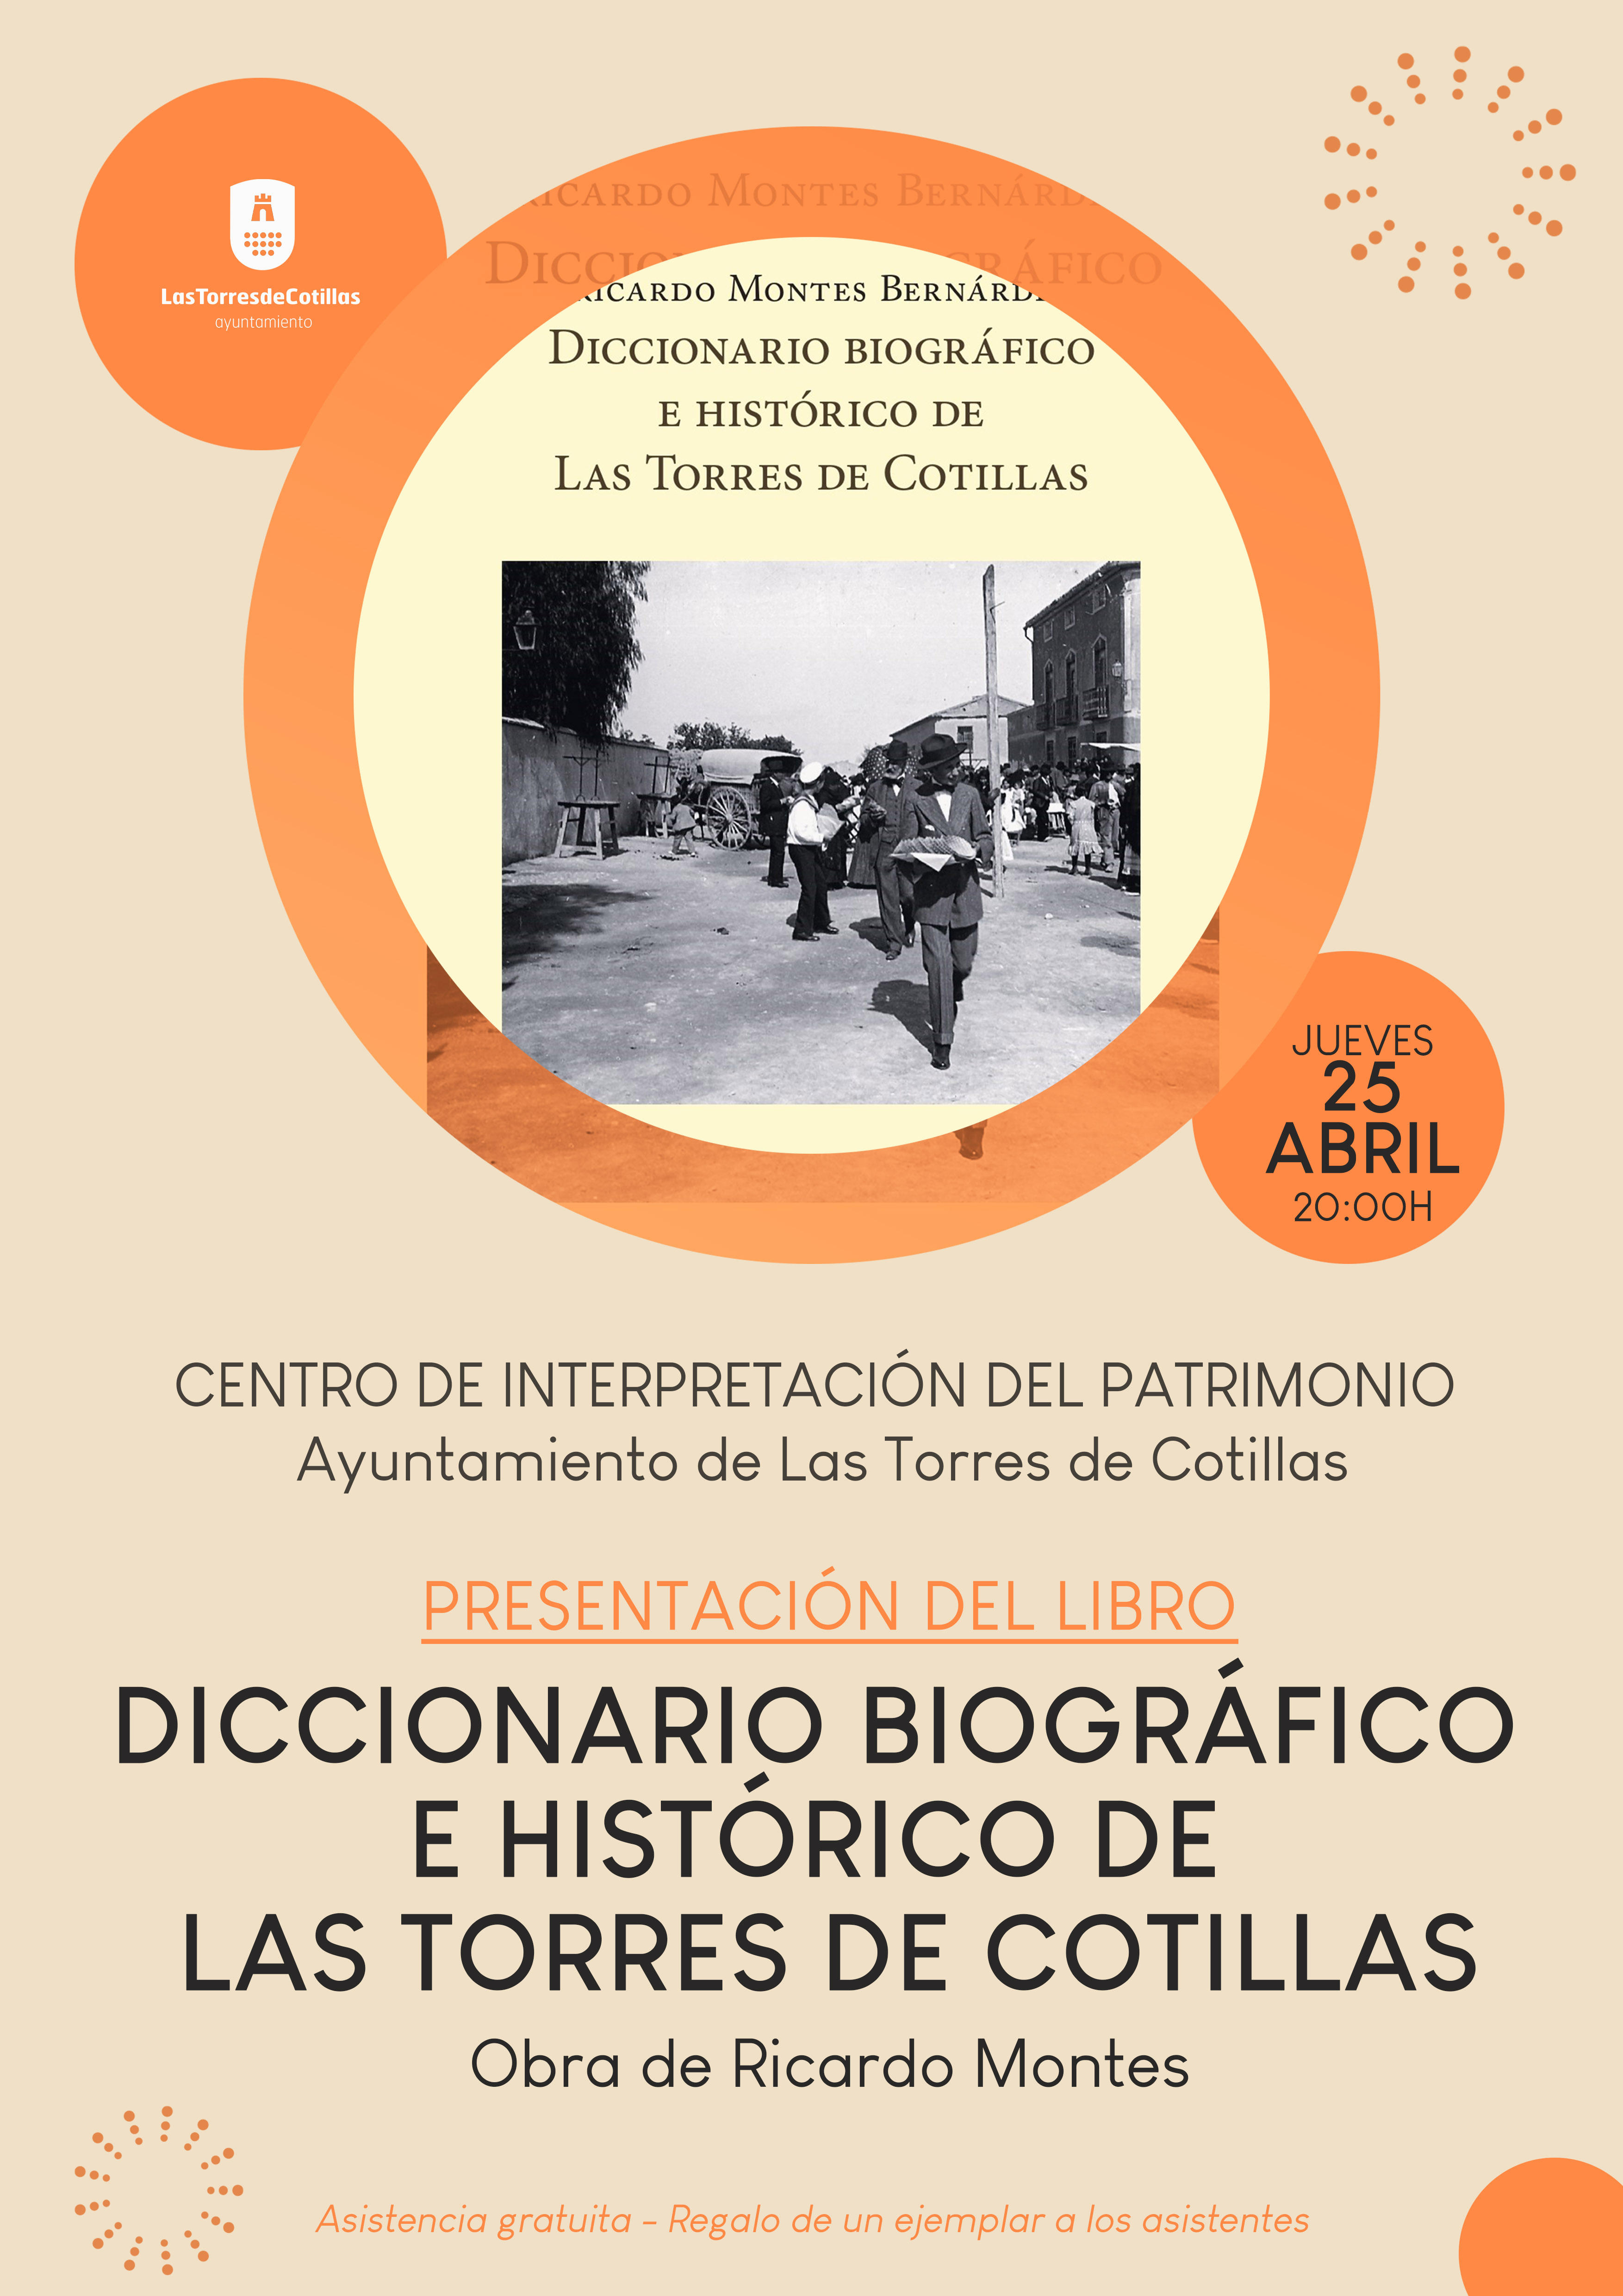 El cronista Ricardo Montes presentará la reedición de su “Diccionario biográfico e histórico de Las Torres de Cotillas”